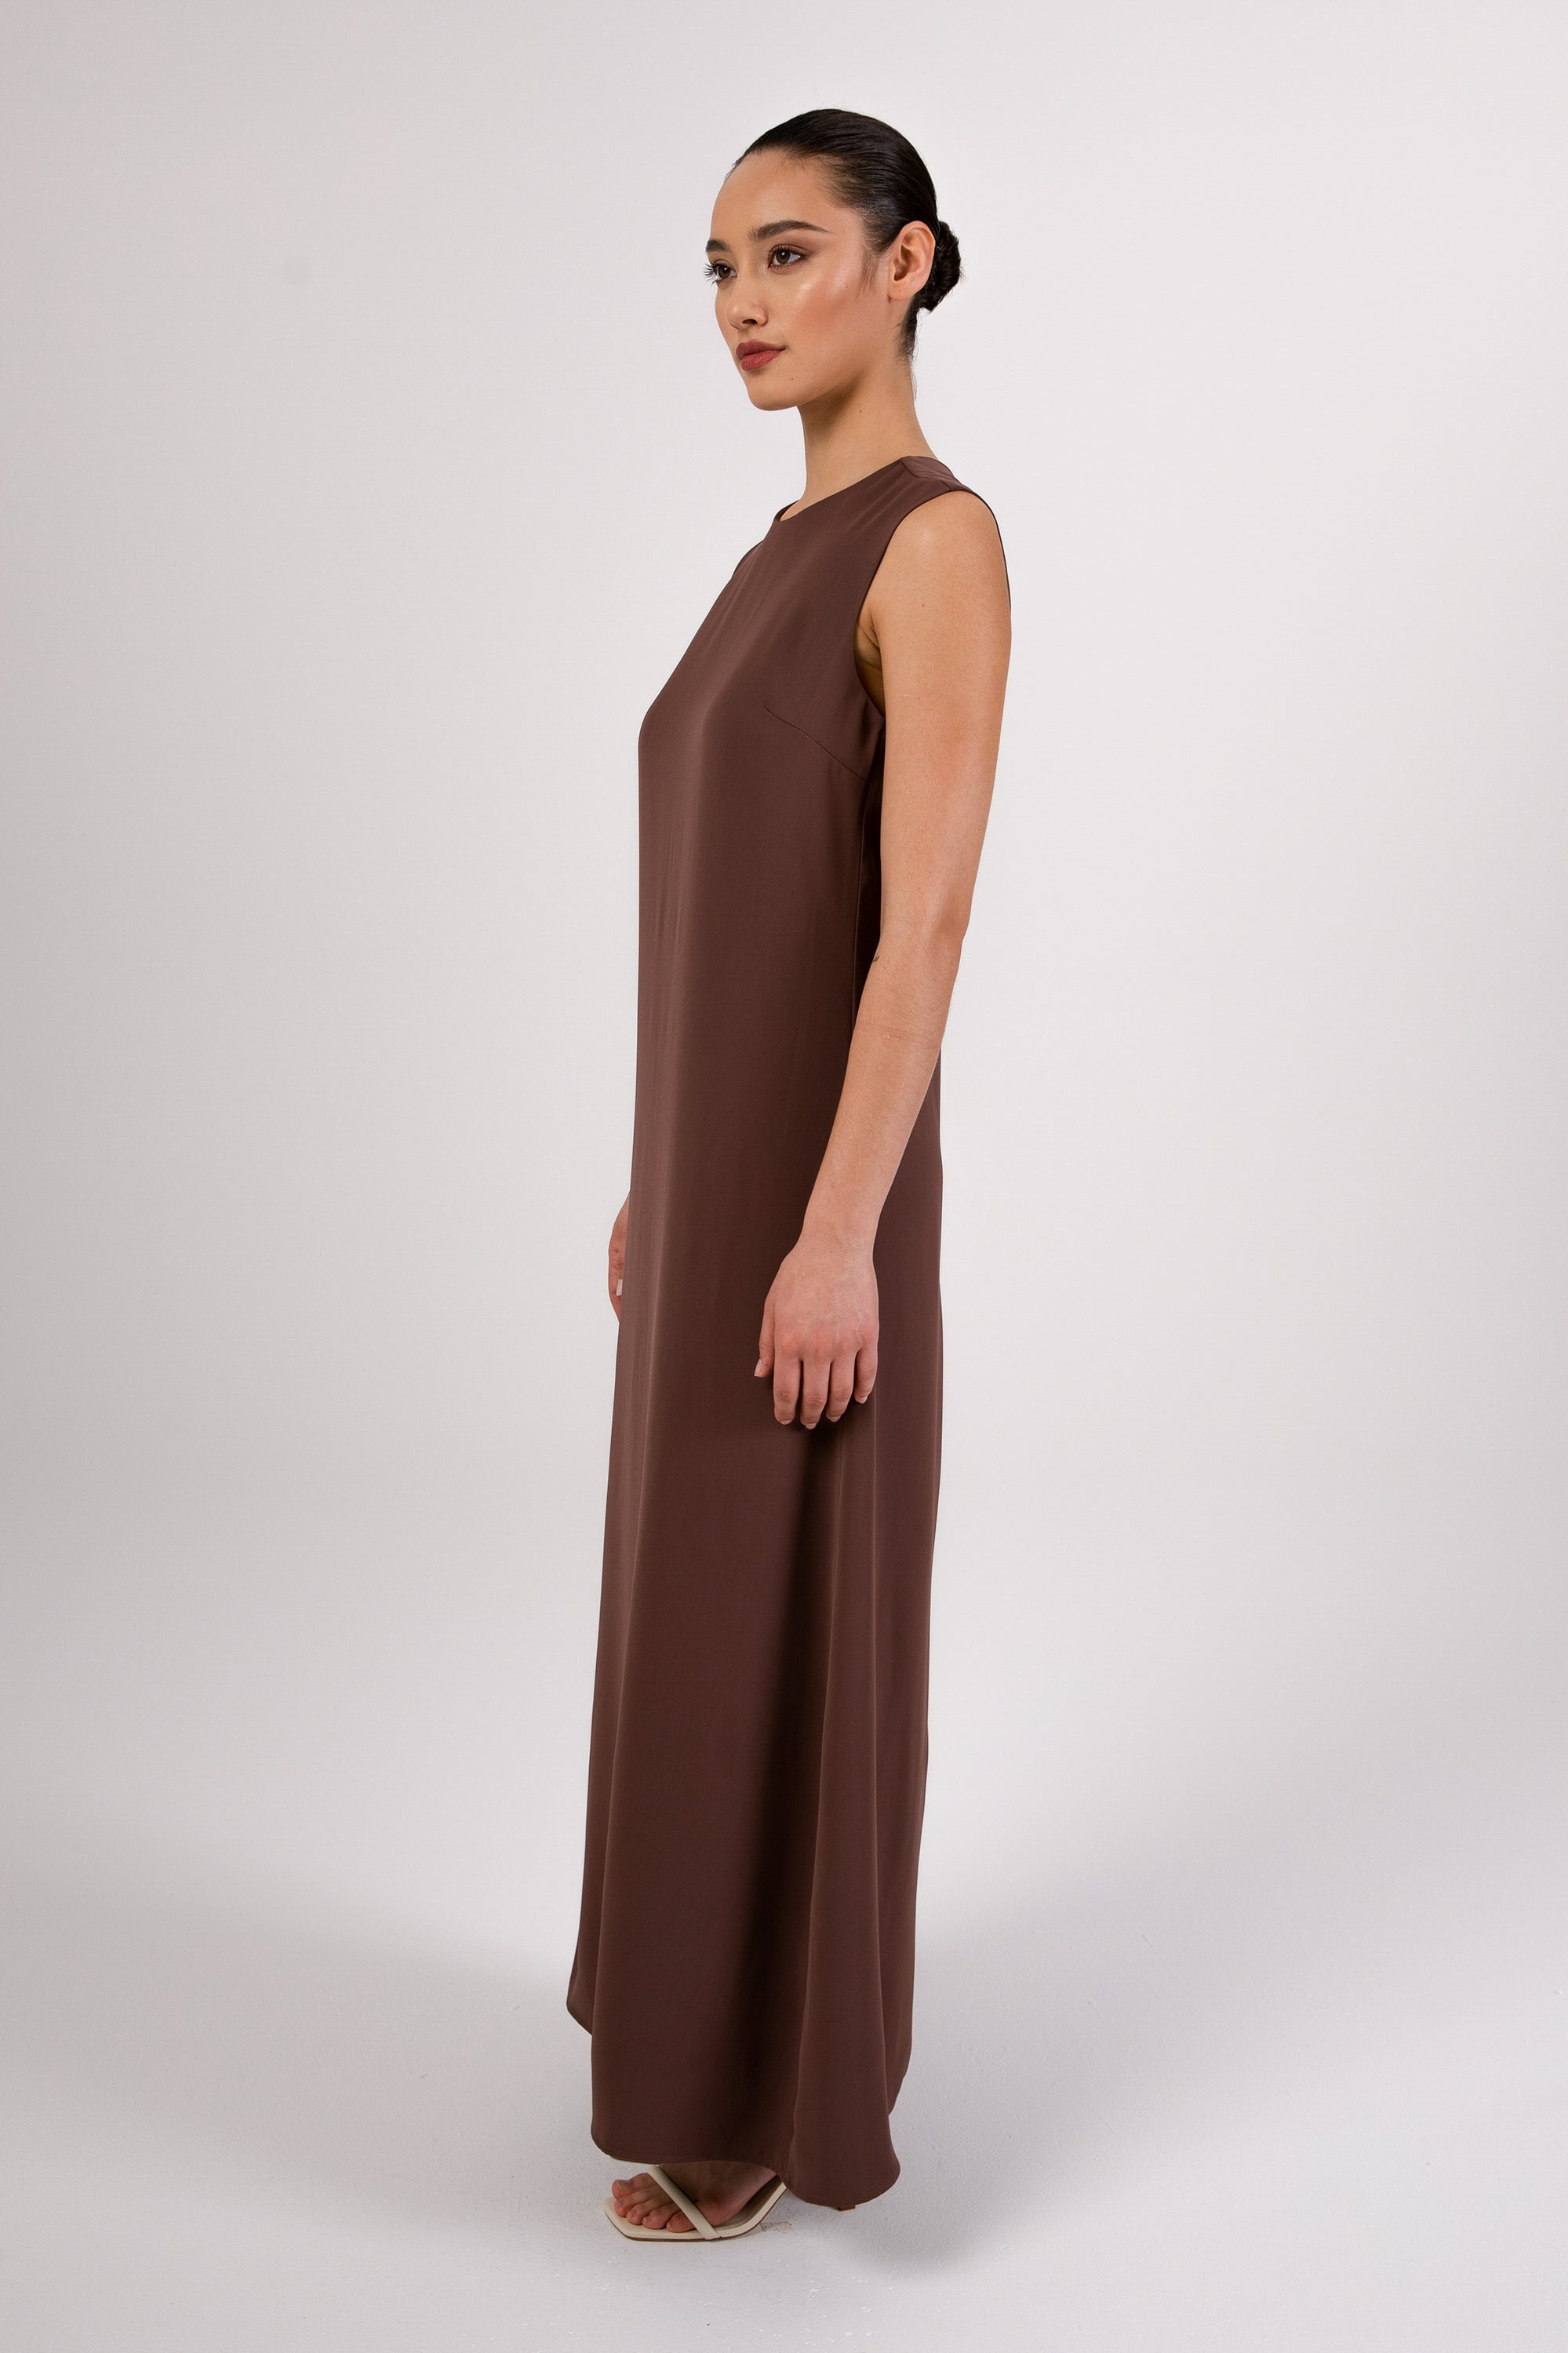 Jamila Sleeveless Maxi Dress - Cocoa Brown Veiled 